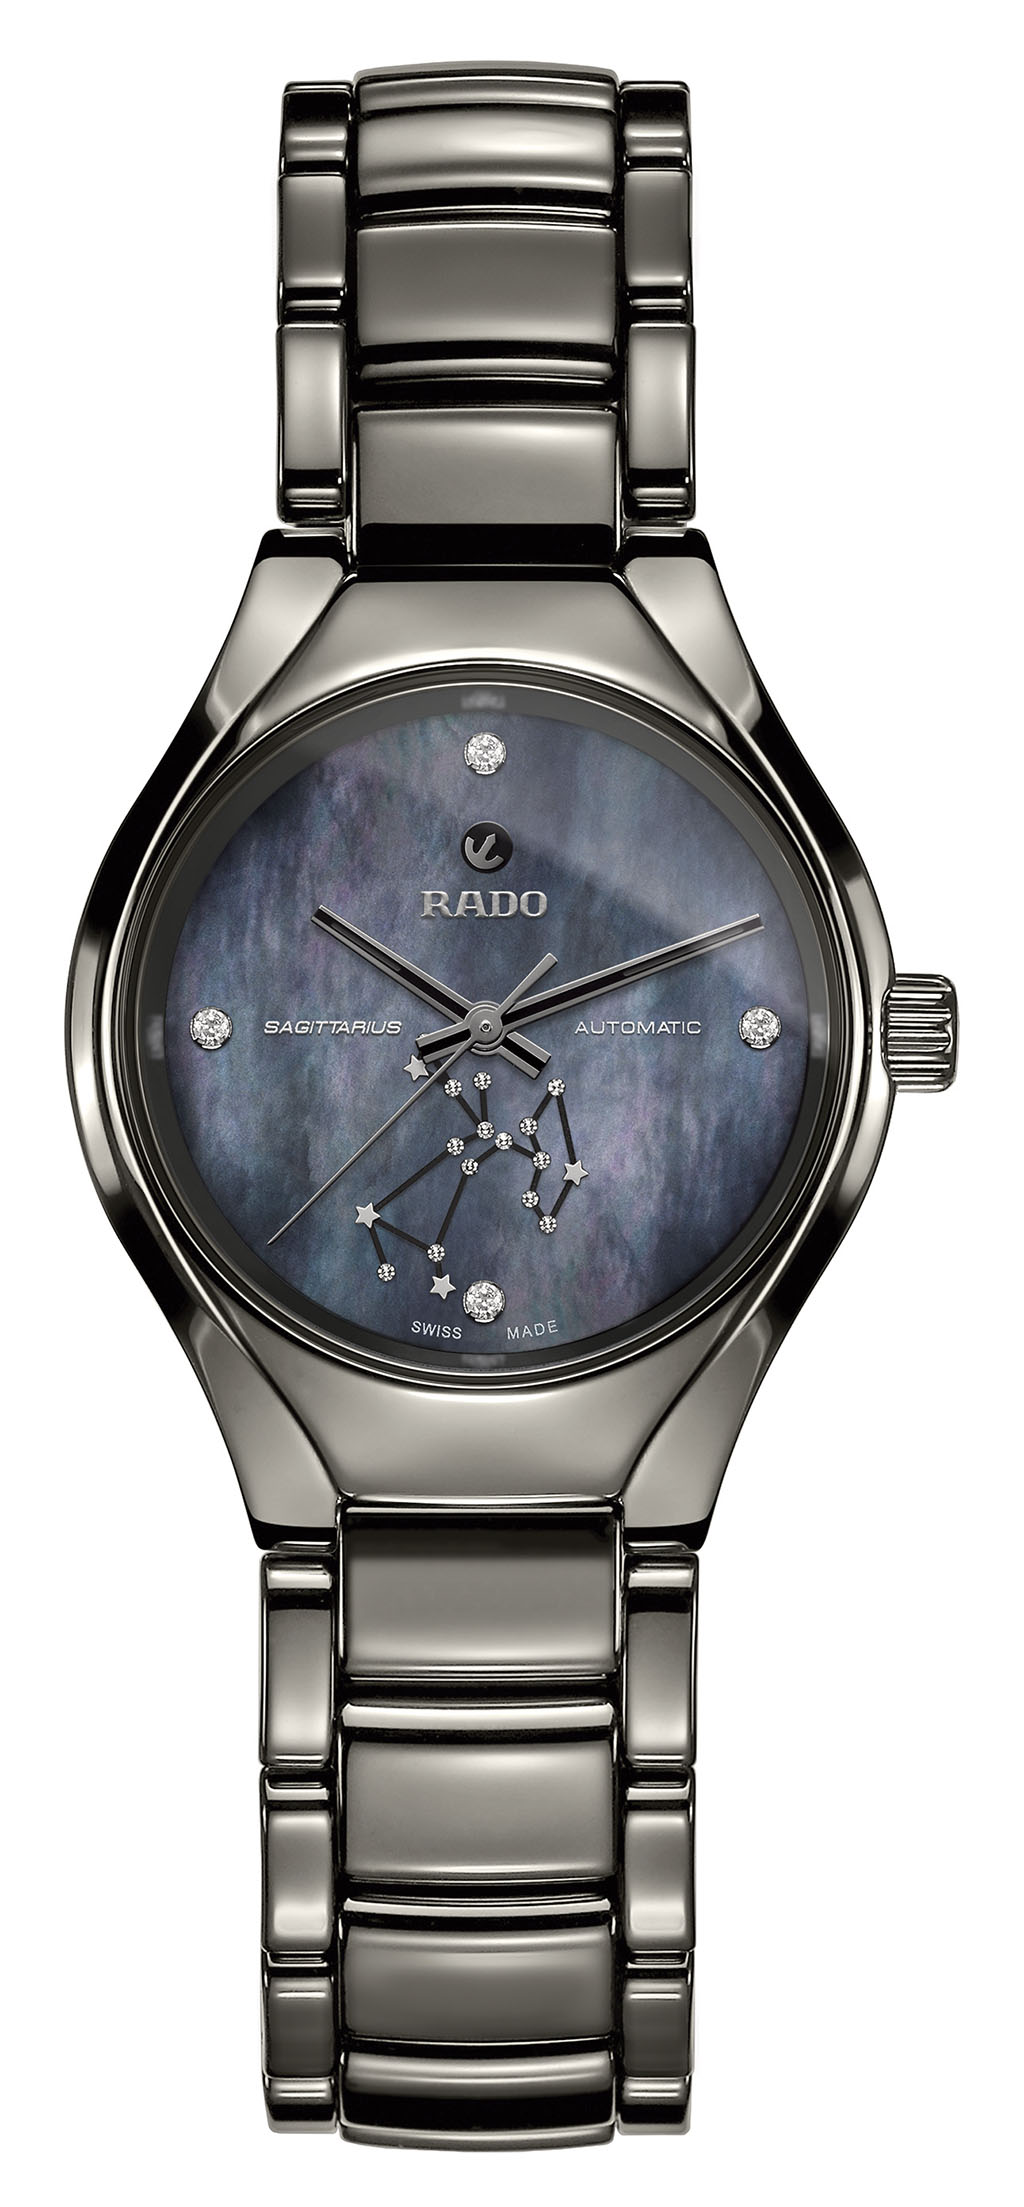 Rado True Star Sign Limited Edition 腕表發佈 